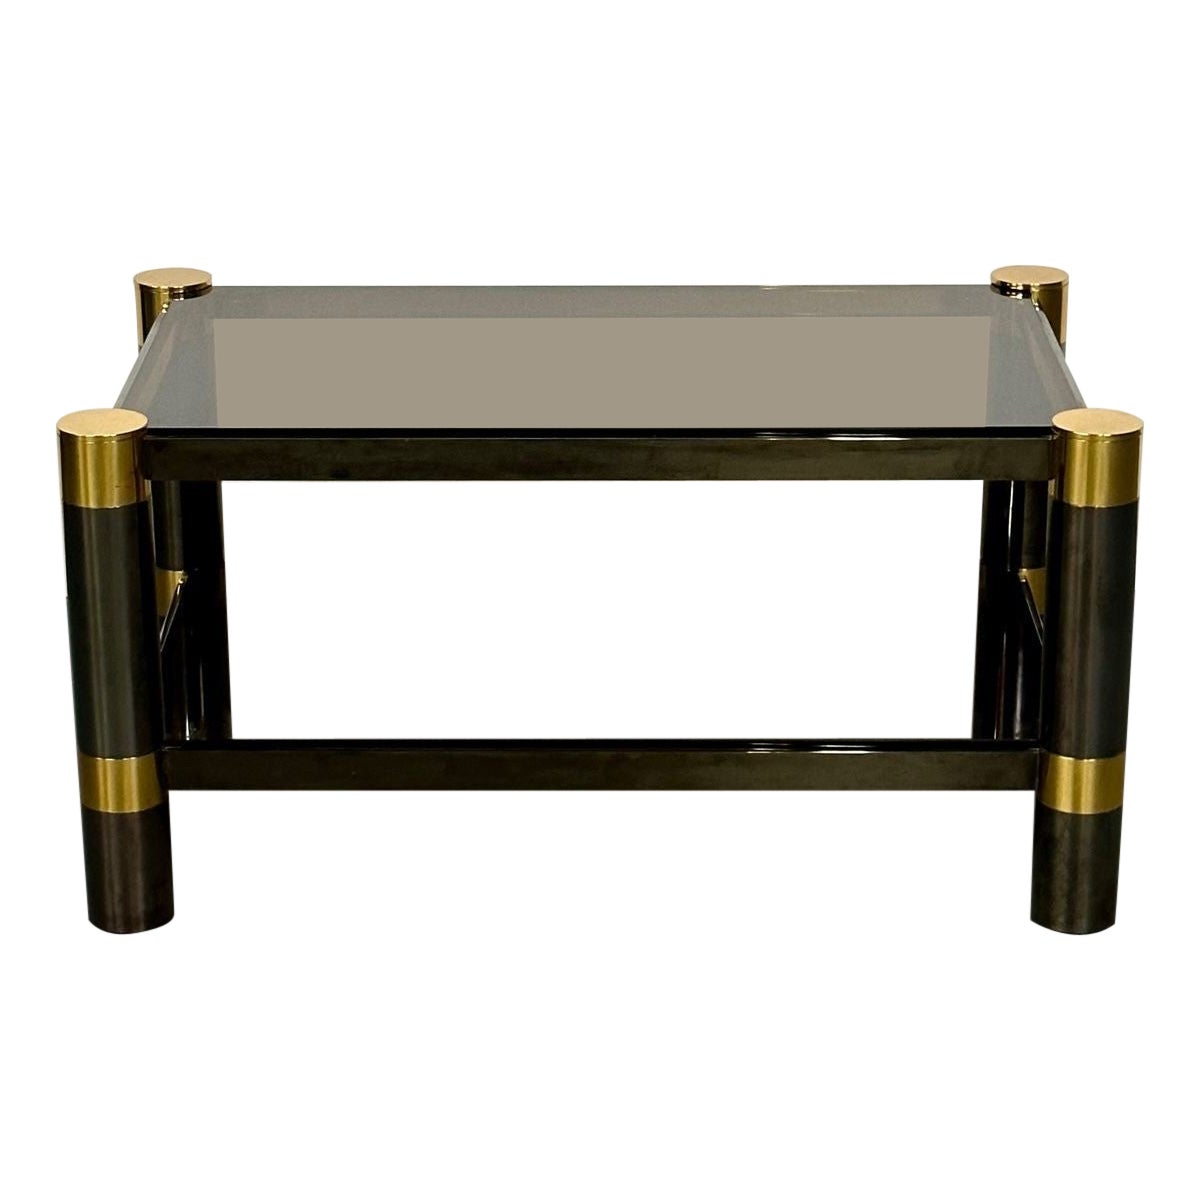 Karl Springer Mid-Century Modern Rectangular Coffee Table, Gunmetal, Brass 1970s For Sale